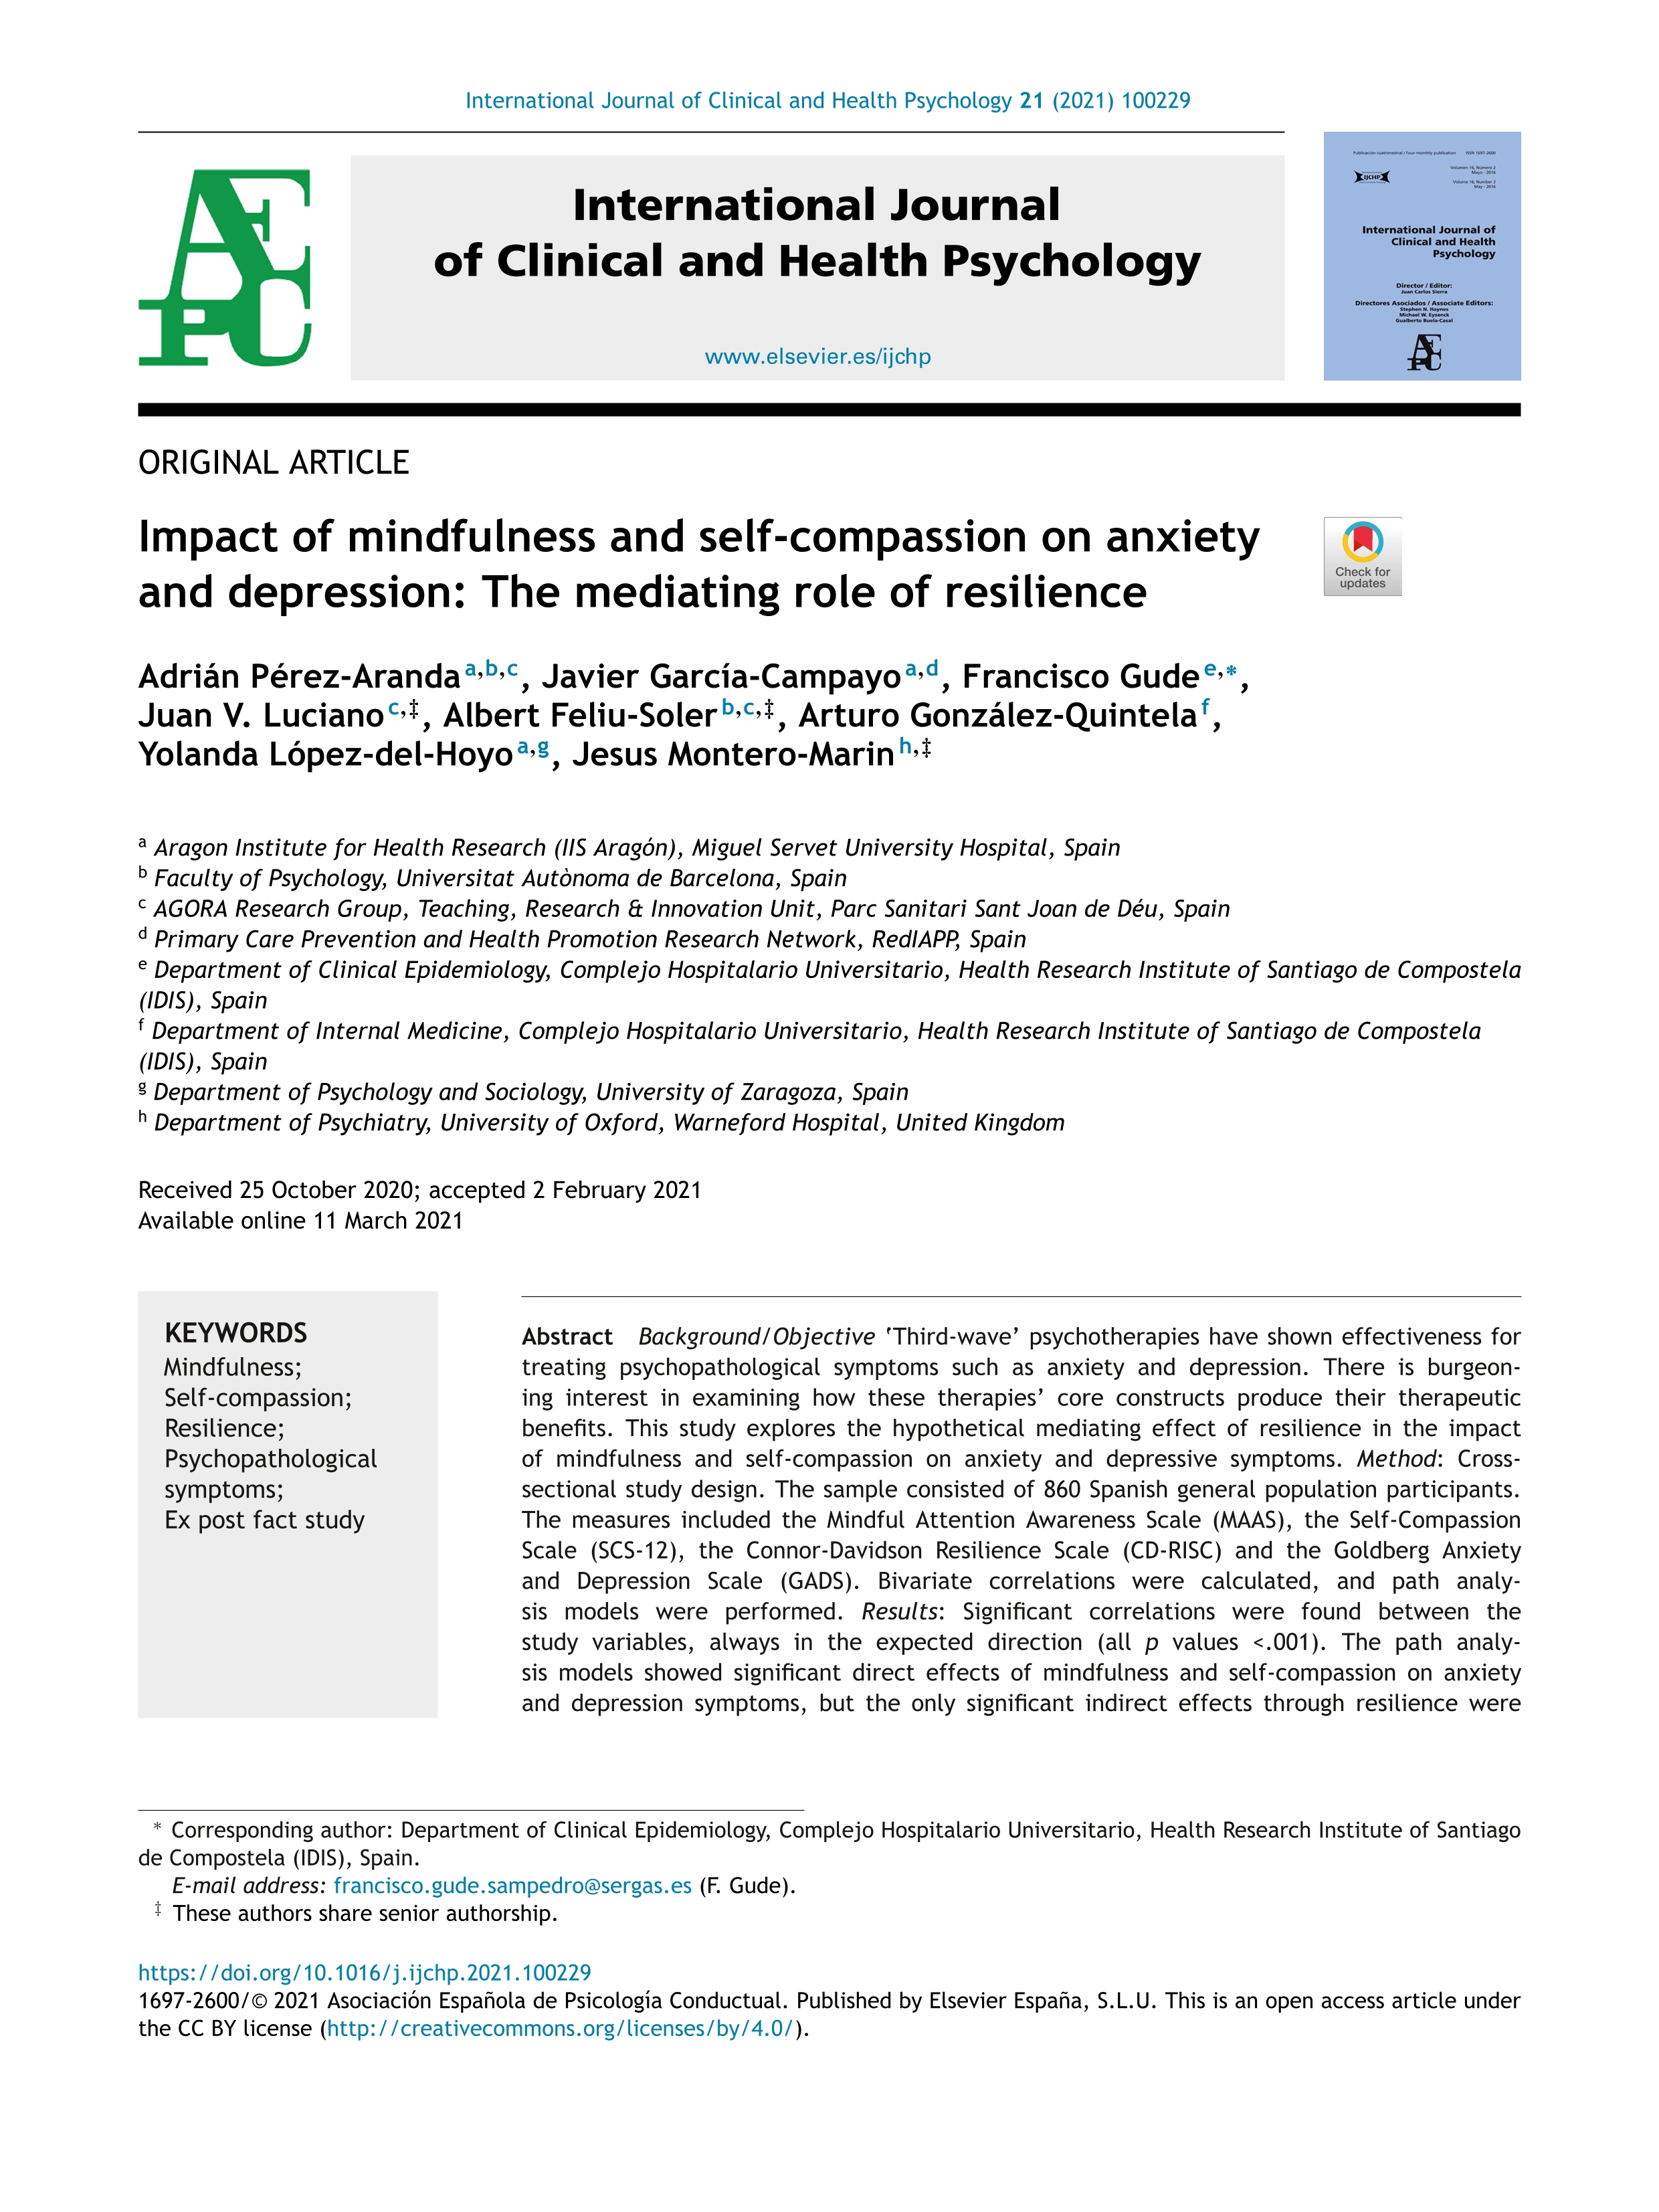 Impact of mindfulness and self-compassion on anxiety and depression: The mediating role of resilience [Impacto del mindfulness y de la autocompasión en la ansiedad y la depresión: rol mediador de la resiliencia]